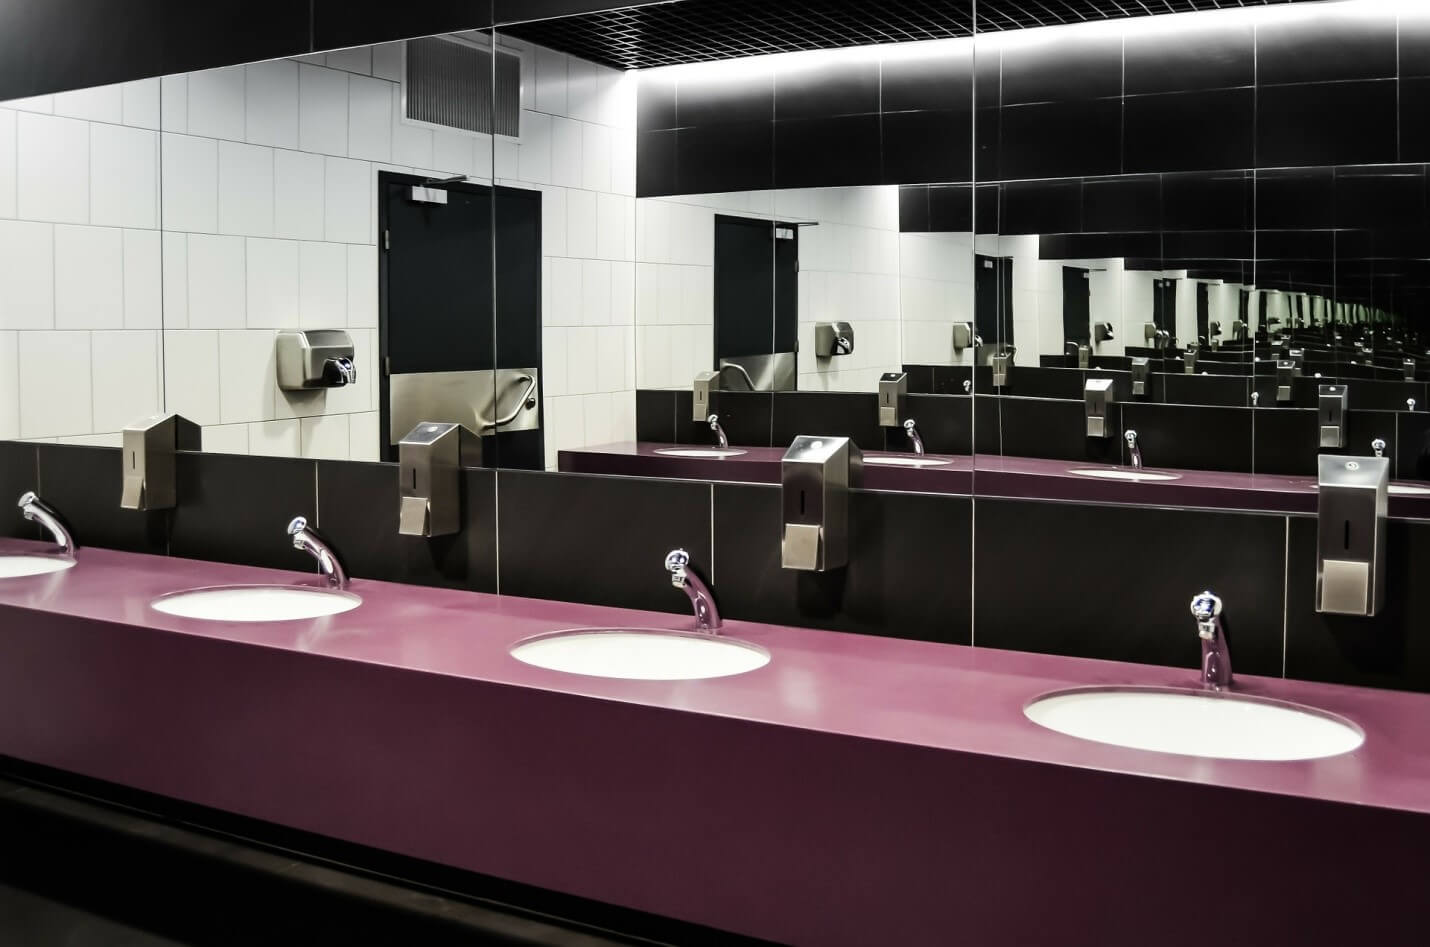 Pri uređenju ambijenta toaleta treba voditi računa o svim detaljima